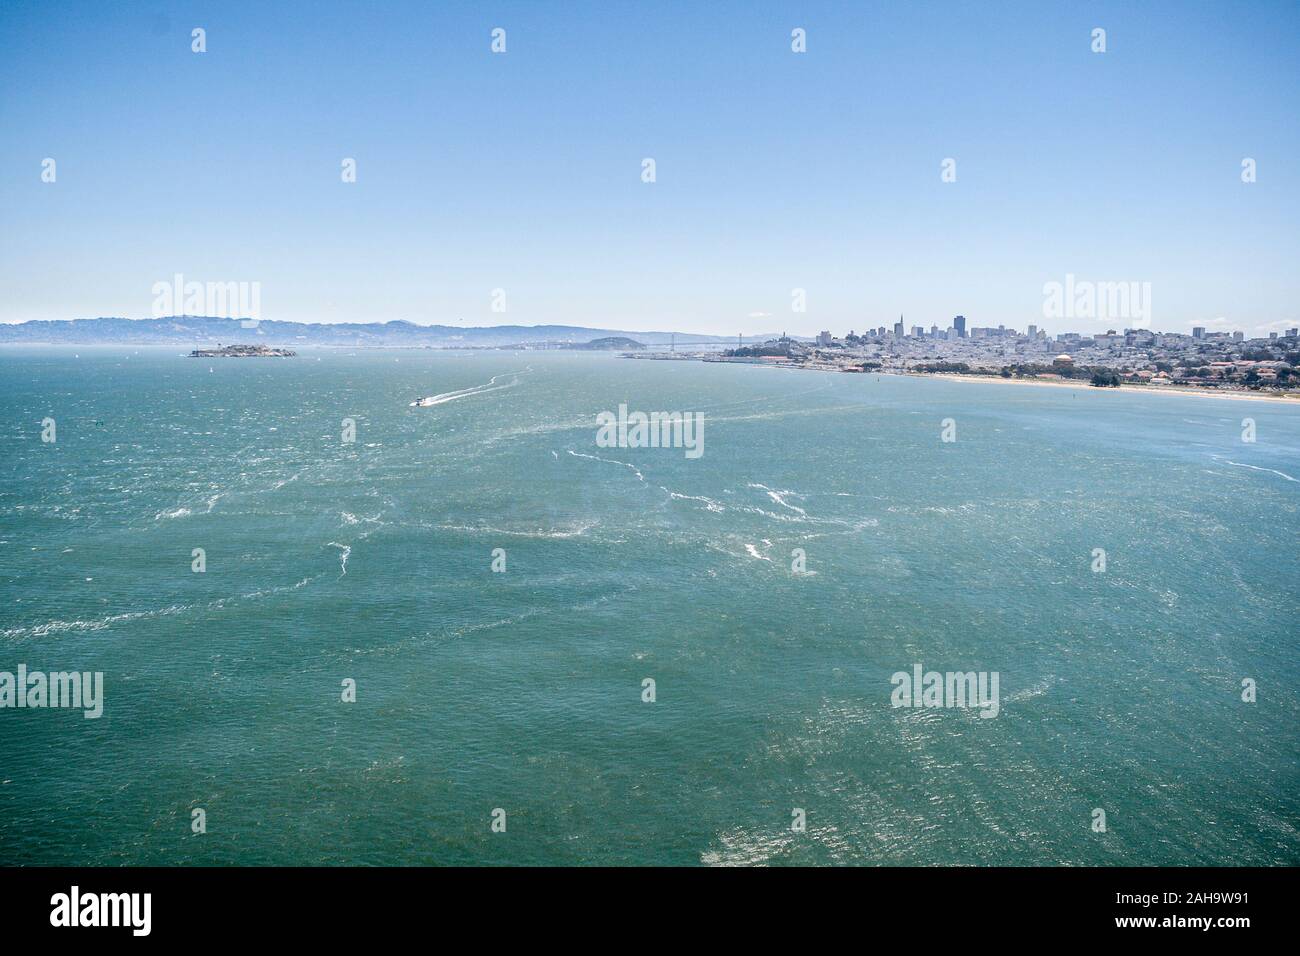 San Francisco et l'île d'Alcatraz wide view, Californie Banque D'Images